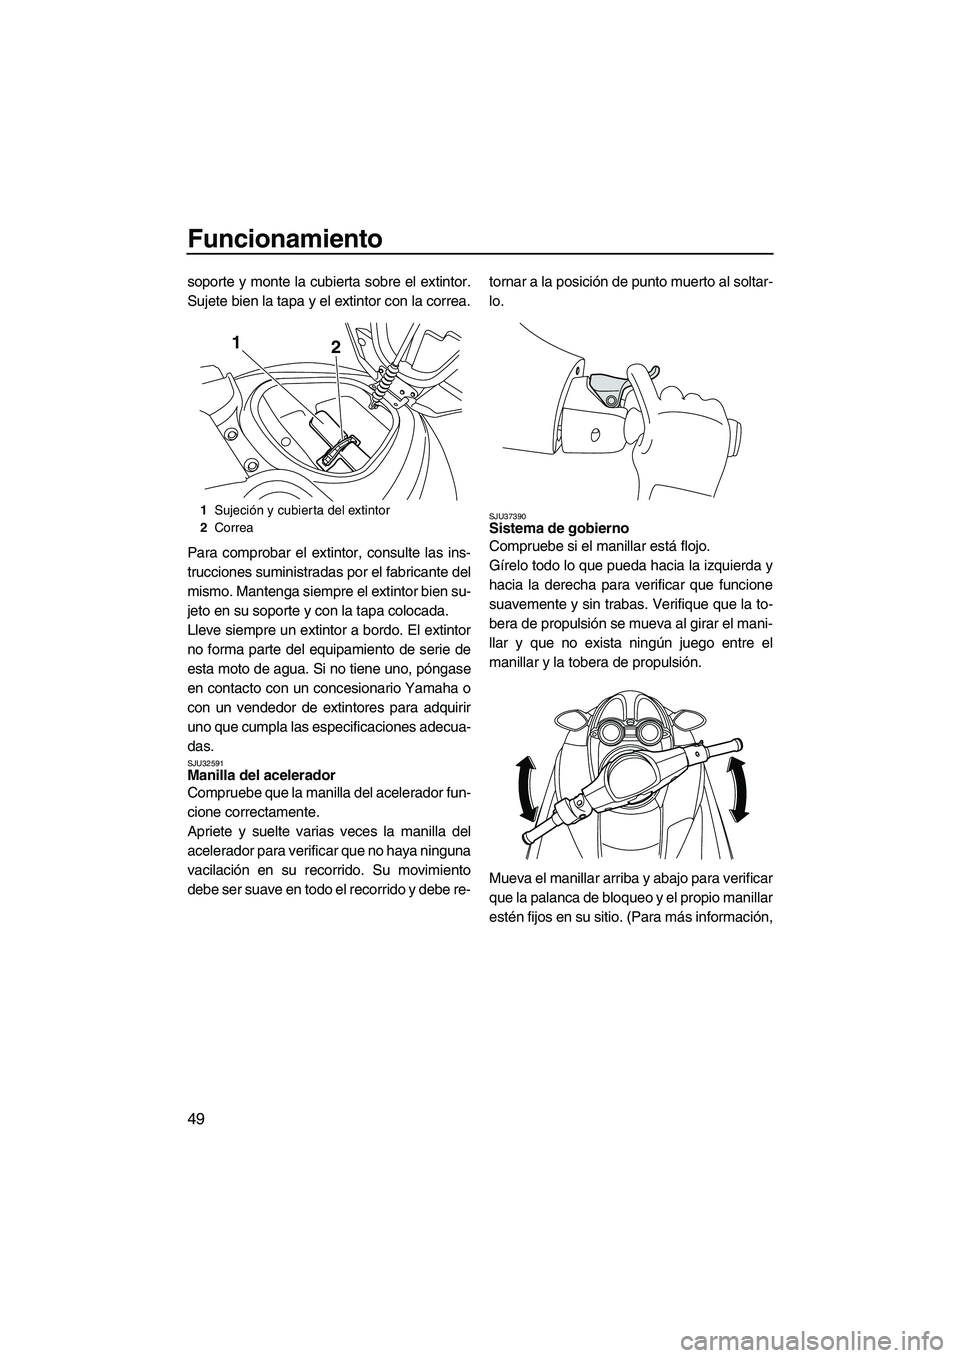 YAMAHA FZR 2009  Manuale de Empleo (in Spanish) Funcionamiento
49
soporte y monte la cubierta sobre el extintor.
Sujete bien la tapa y el extintor con la correa.
Para comprobar el extintor, consulte las ins-
trucciones suministradas por el fabrican